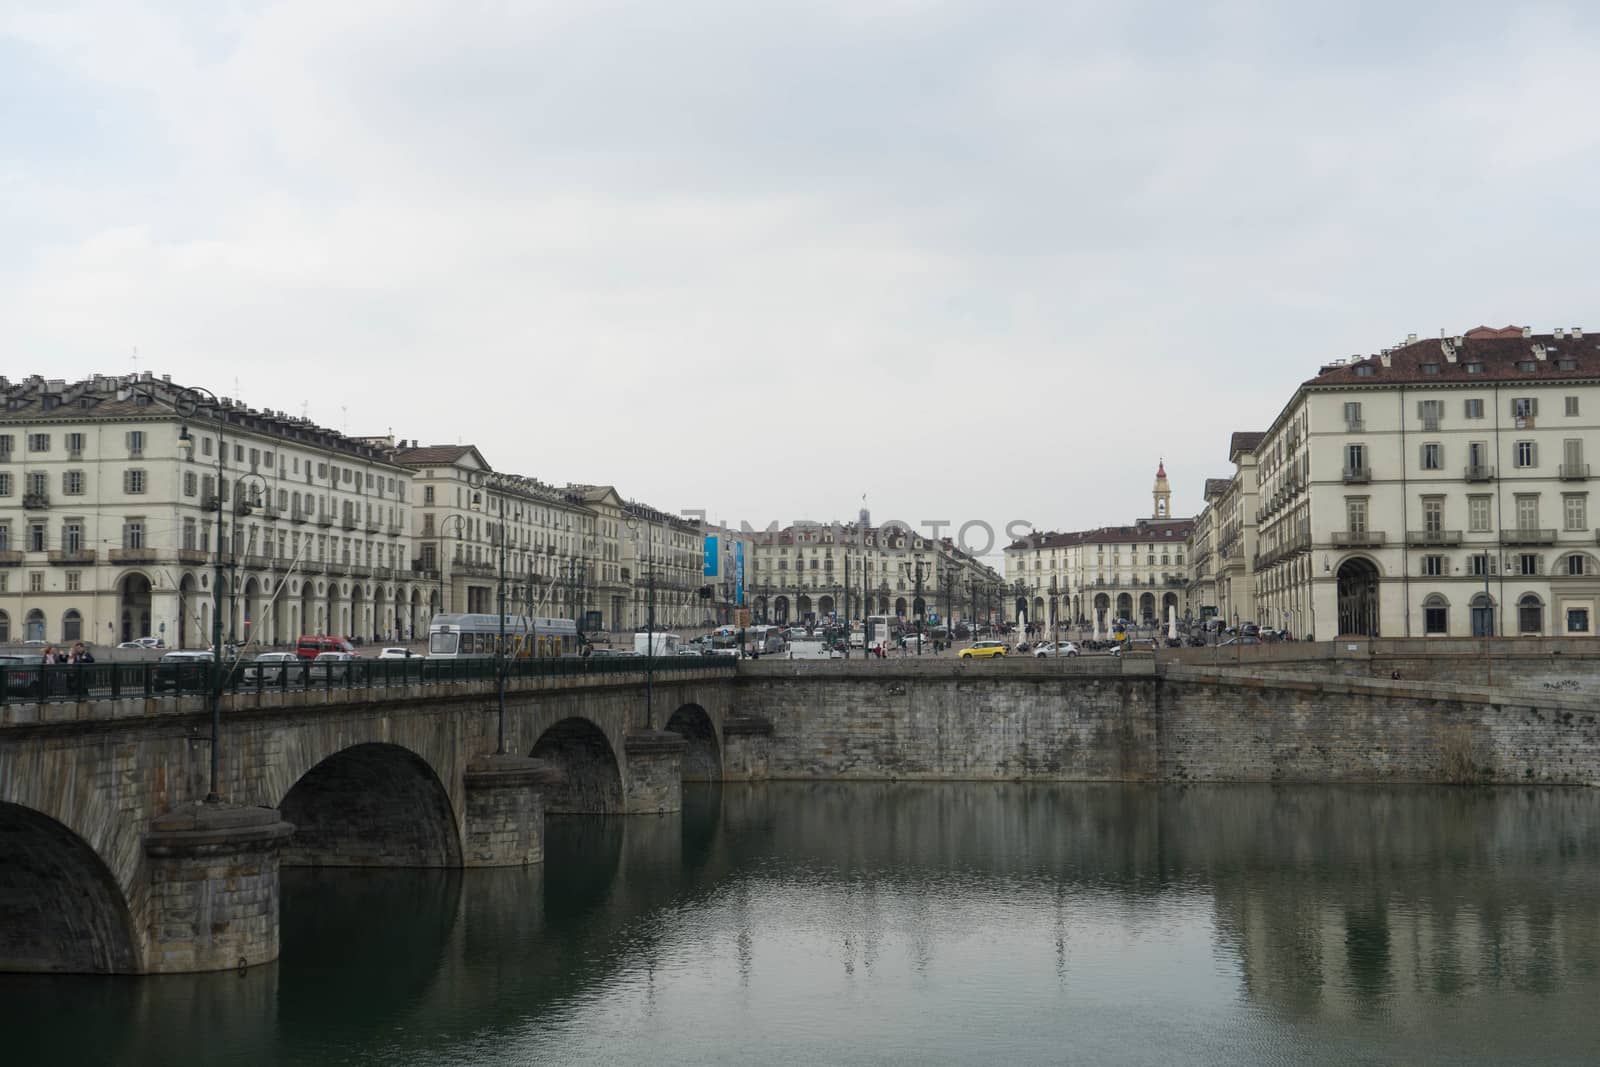 Italy, Turin - River "Po" and Vittorio Veneto Square, March 2018 by cosca